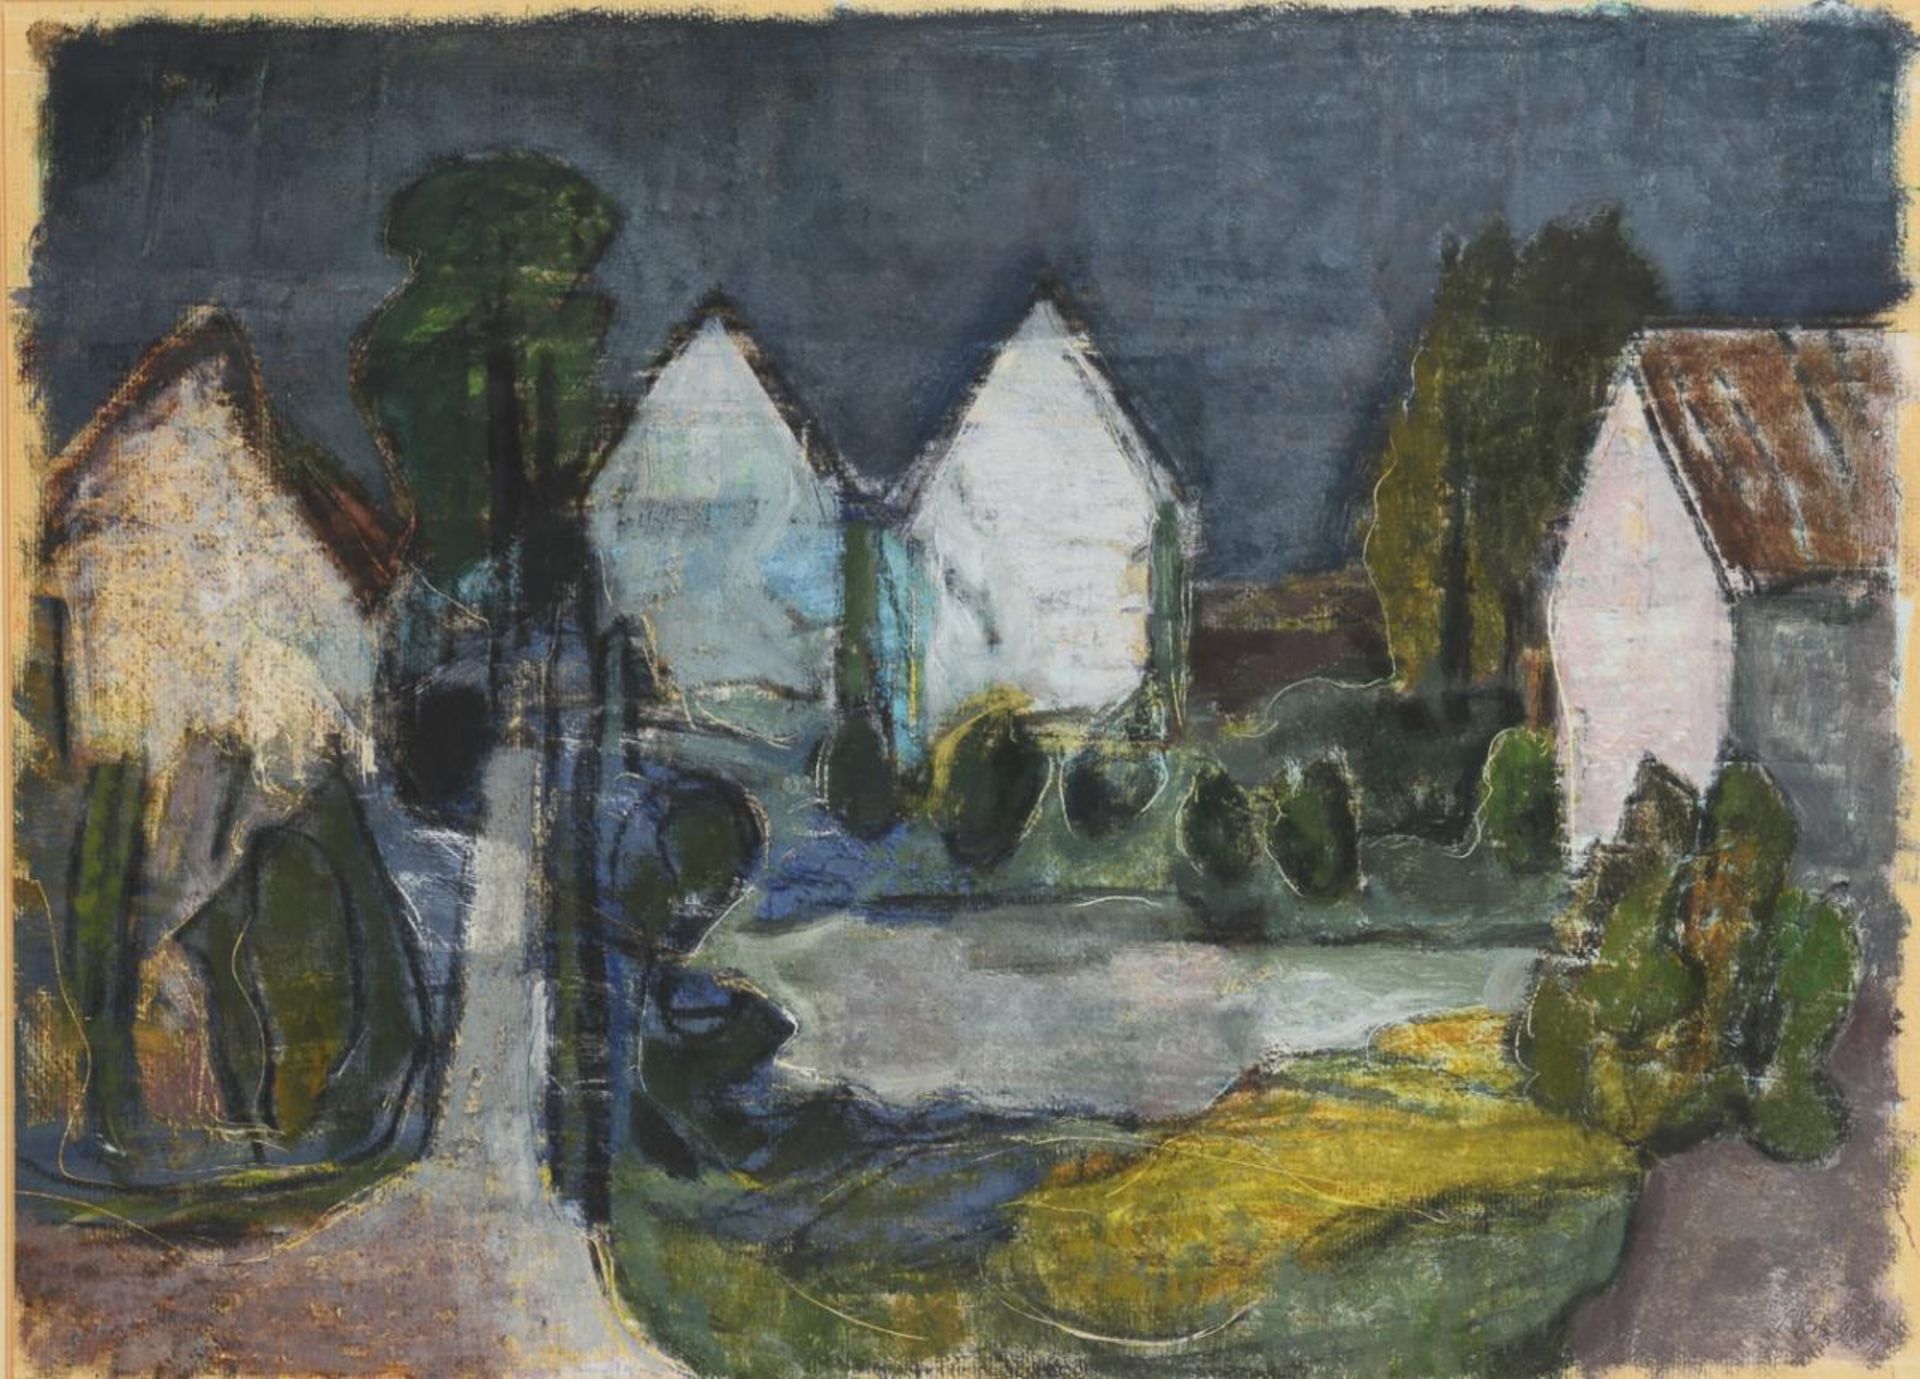 Monogrammist: Landschaft mit Häusern und Teich